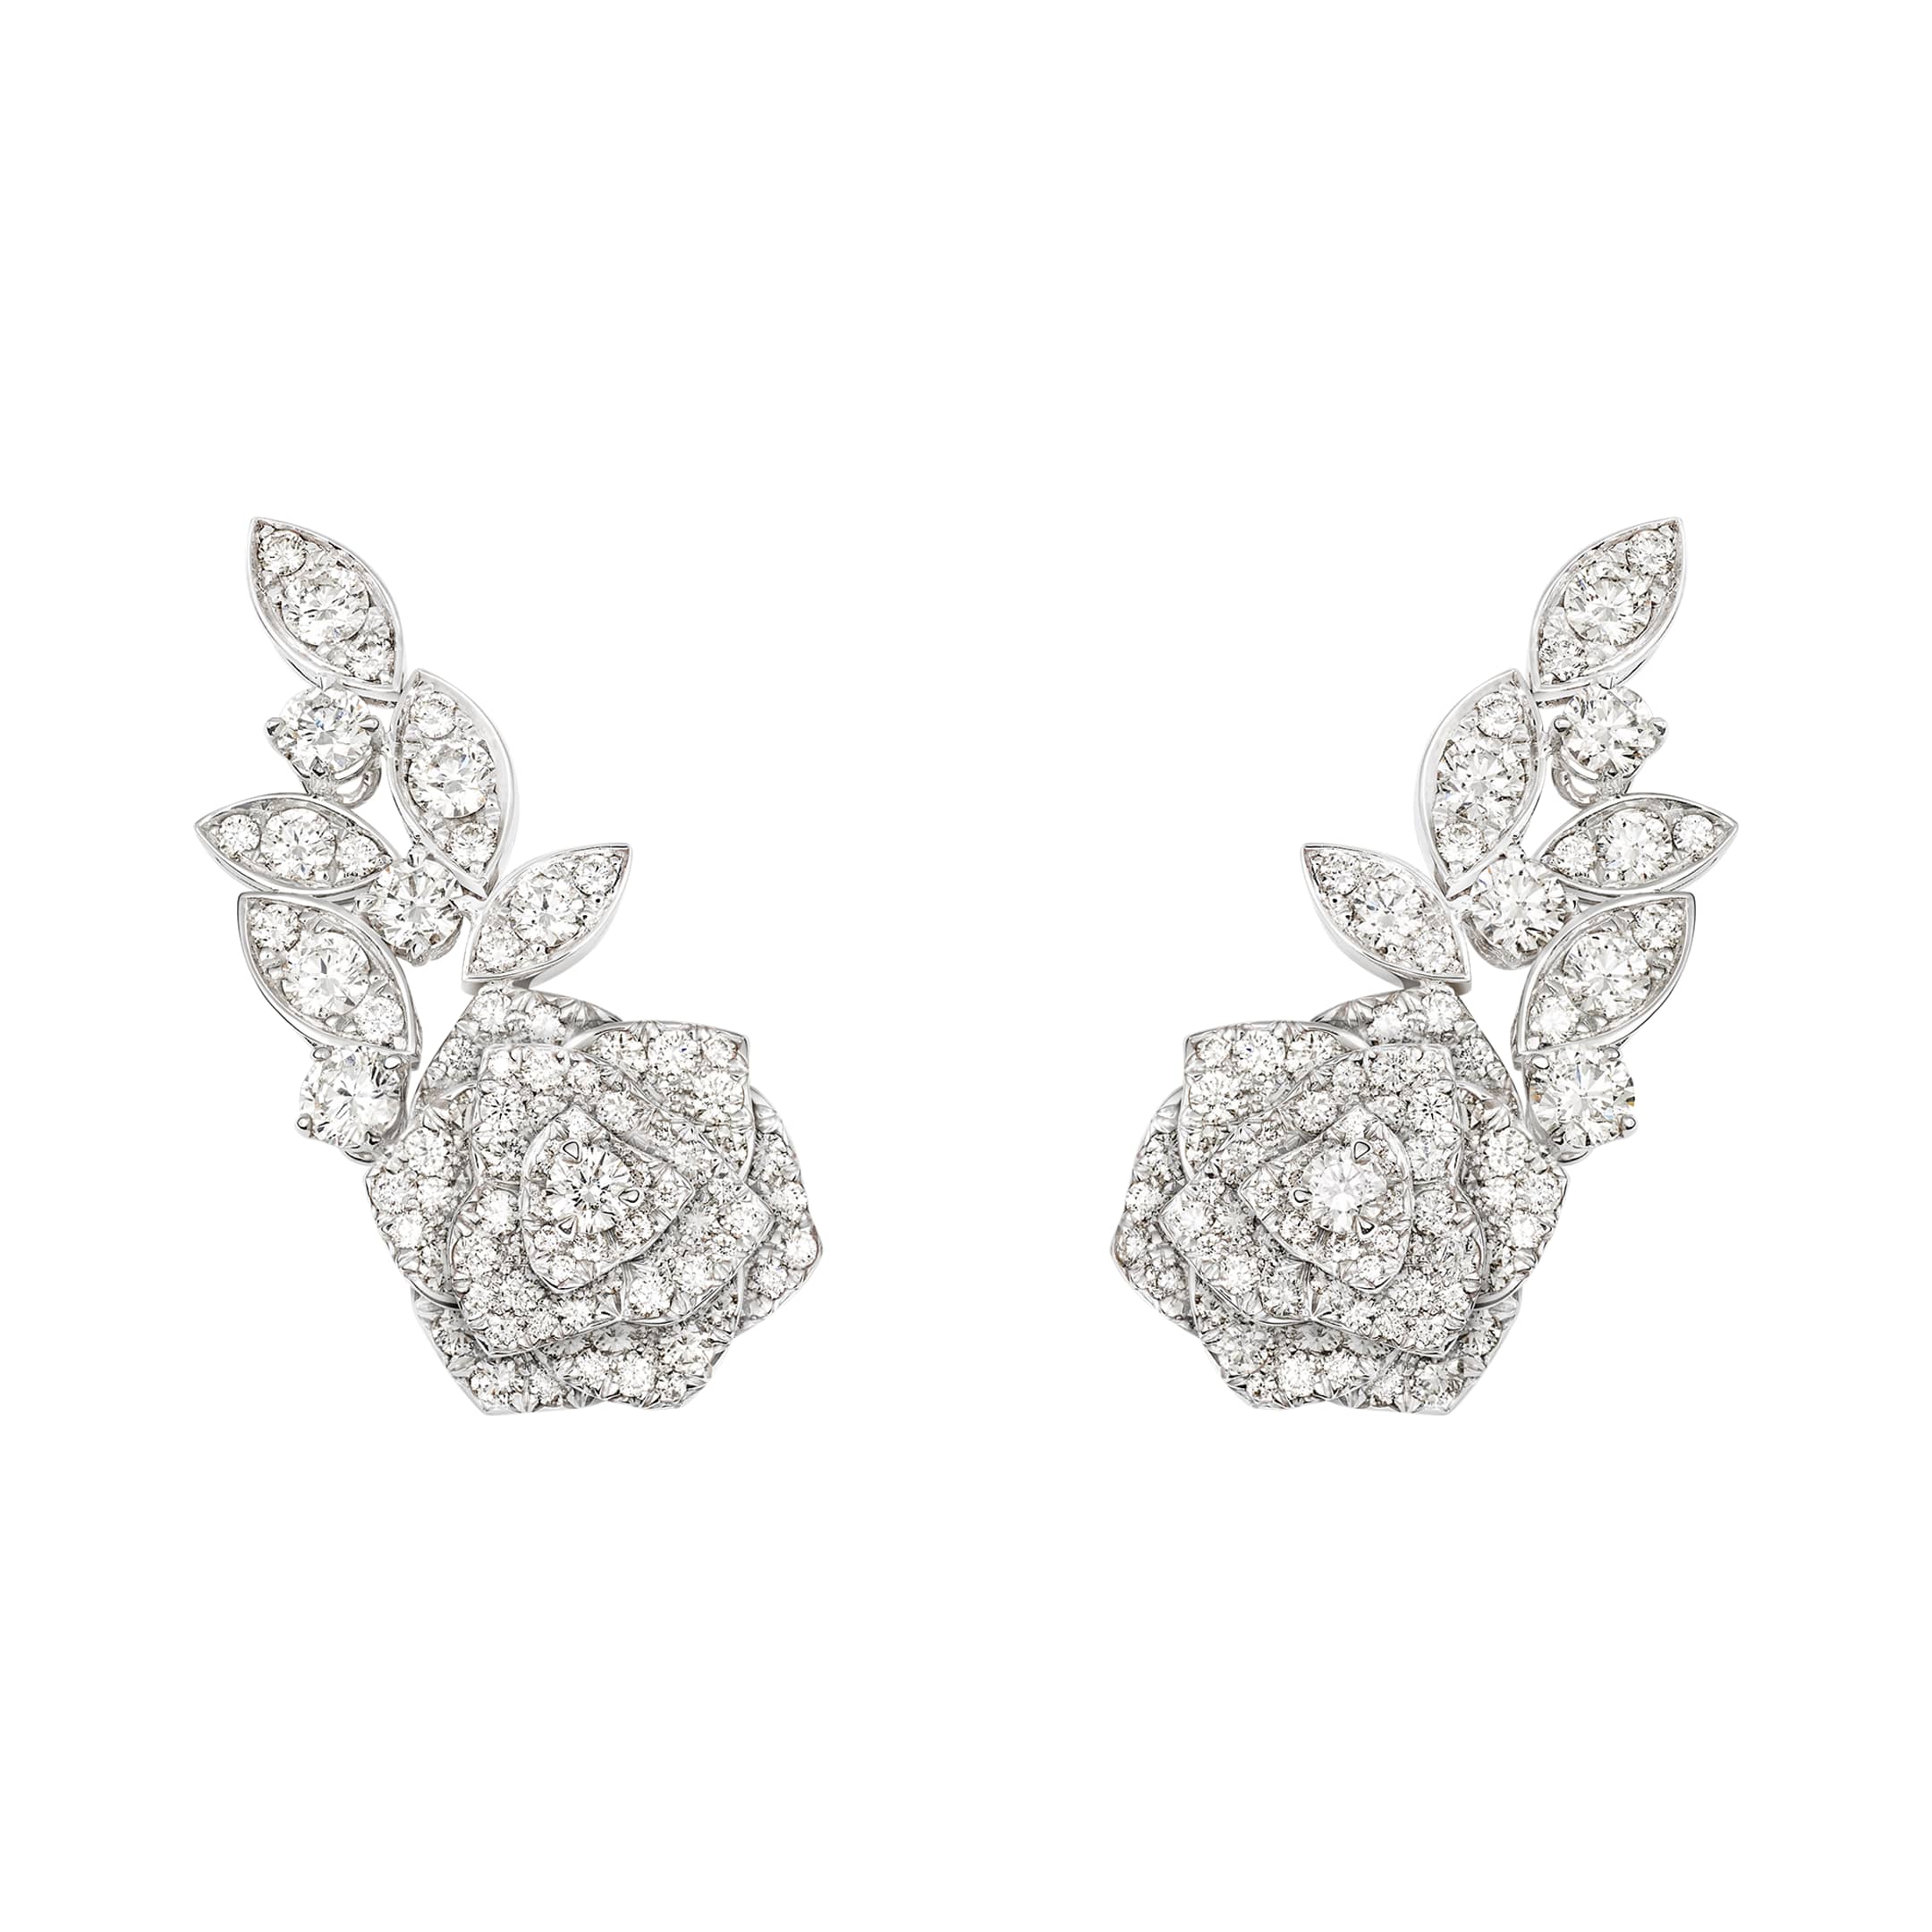 White gold Diamond Earrings G38U0076 - Piaget Luxury Jewelry Online